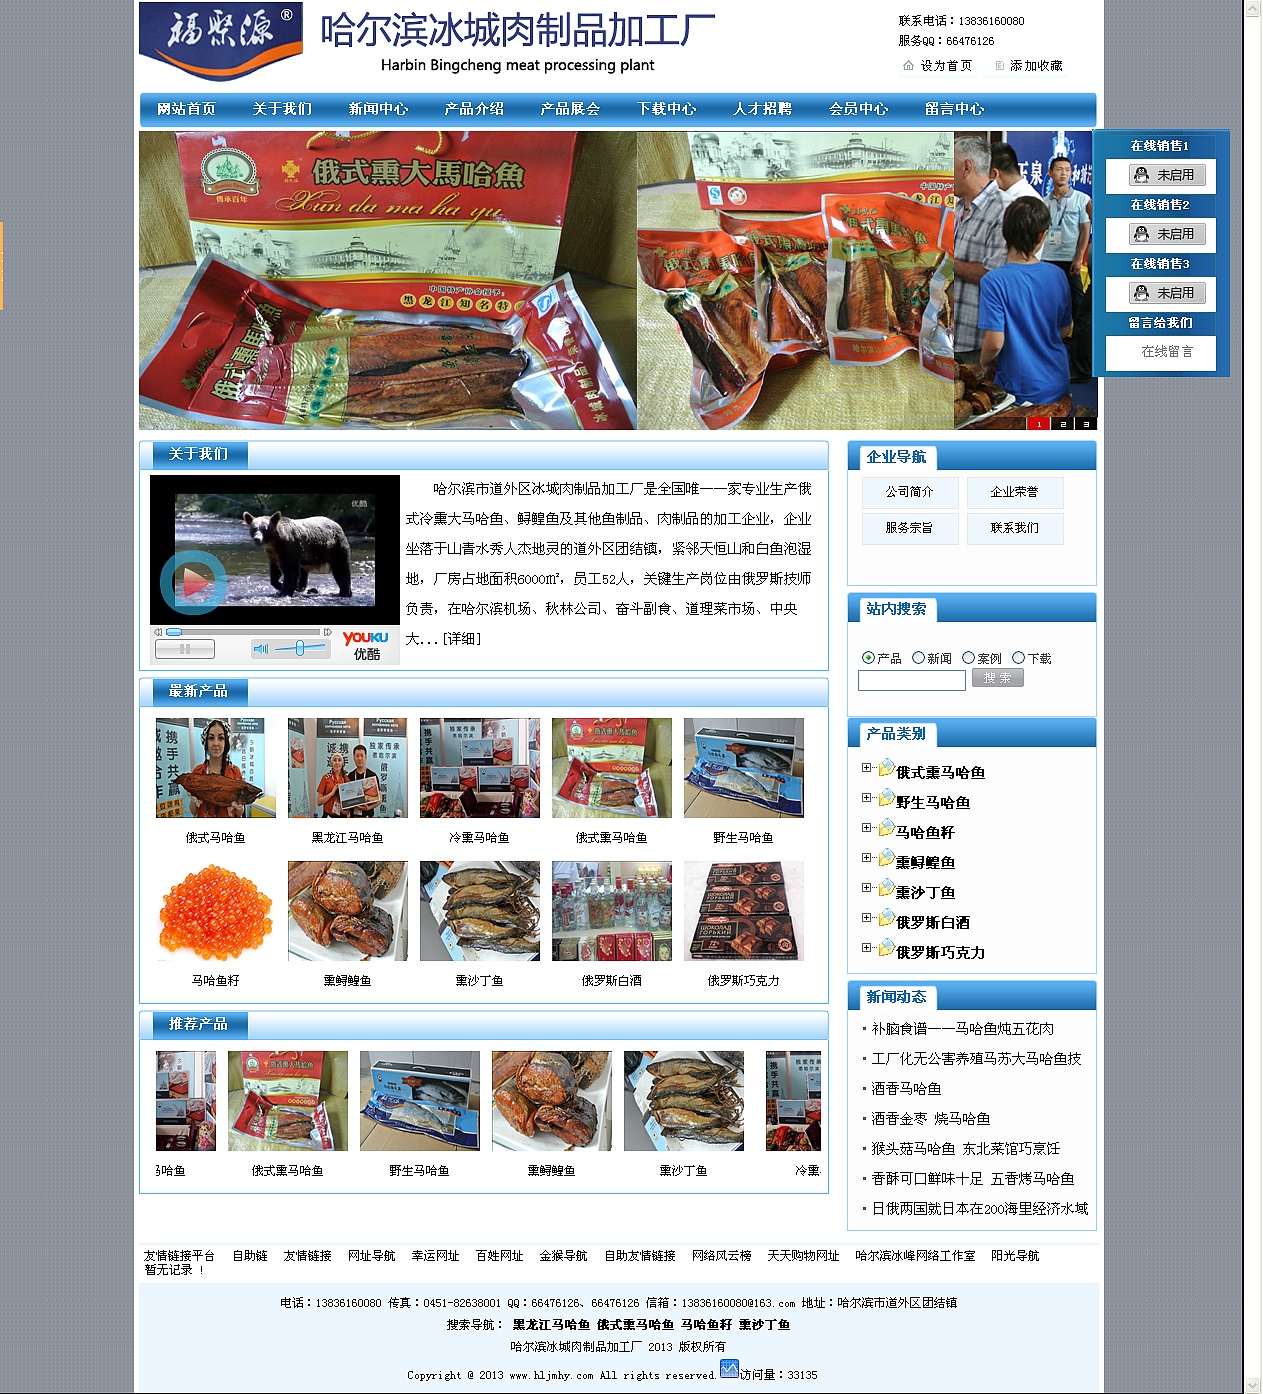 哈尔滨冰城肉制品加工厂企业网站